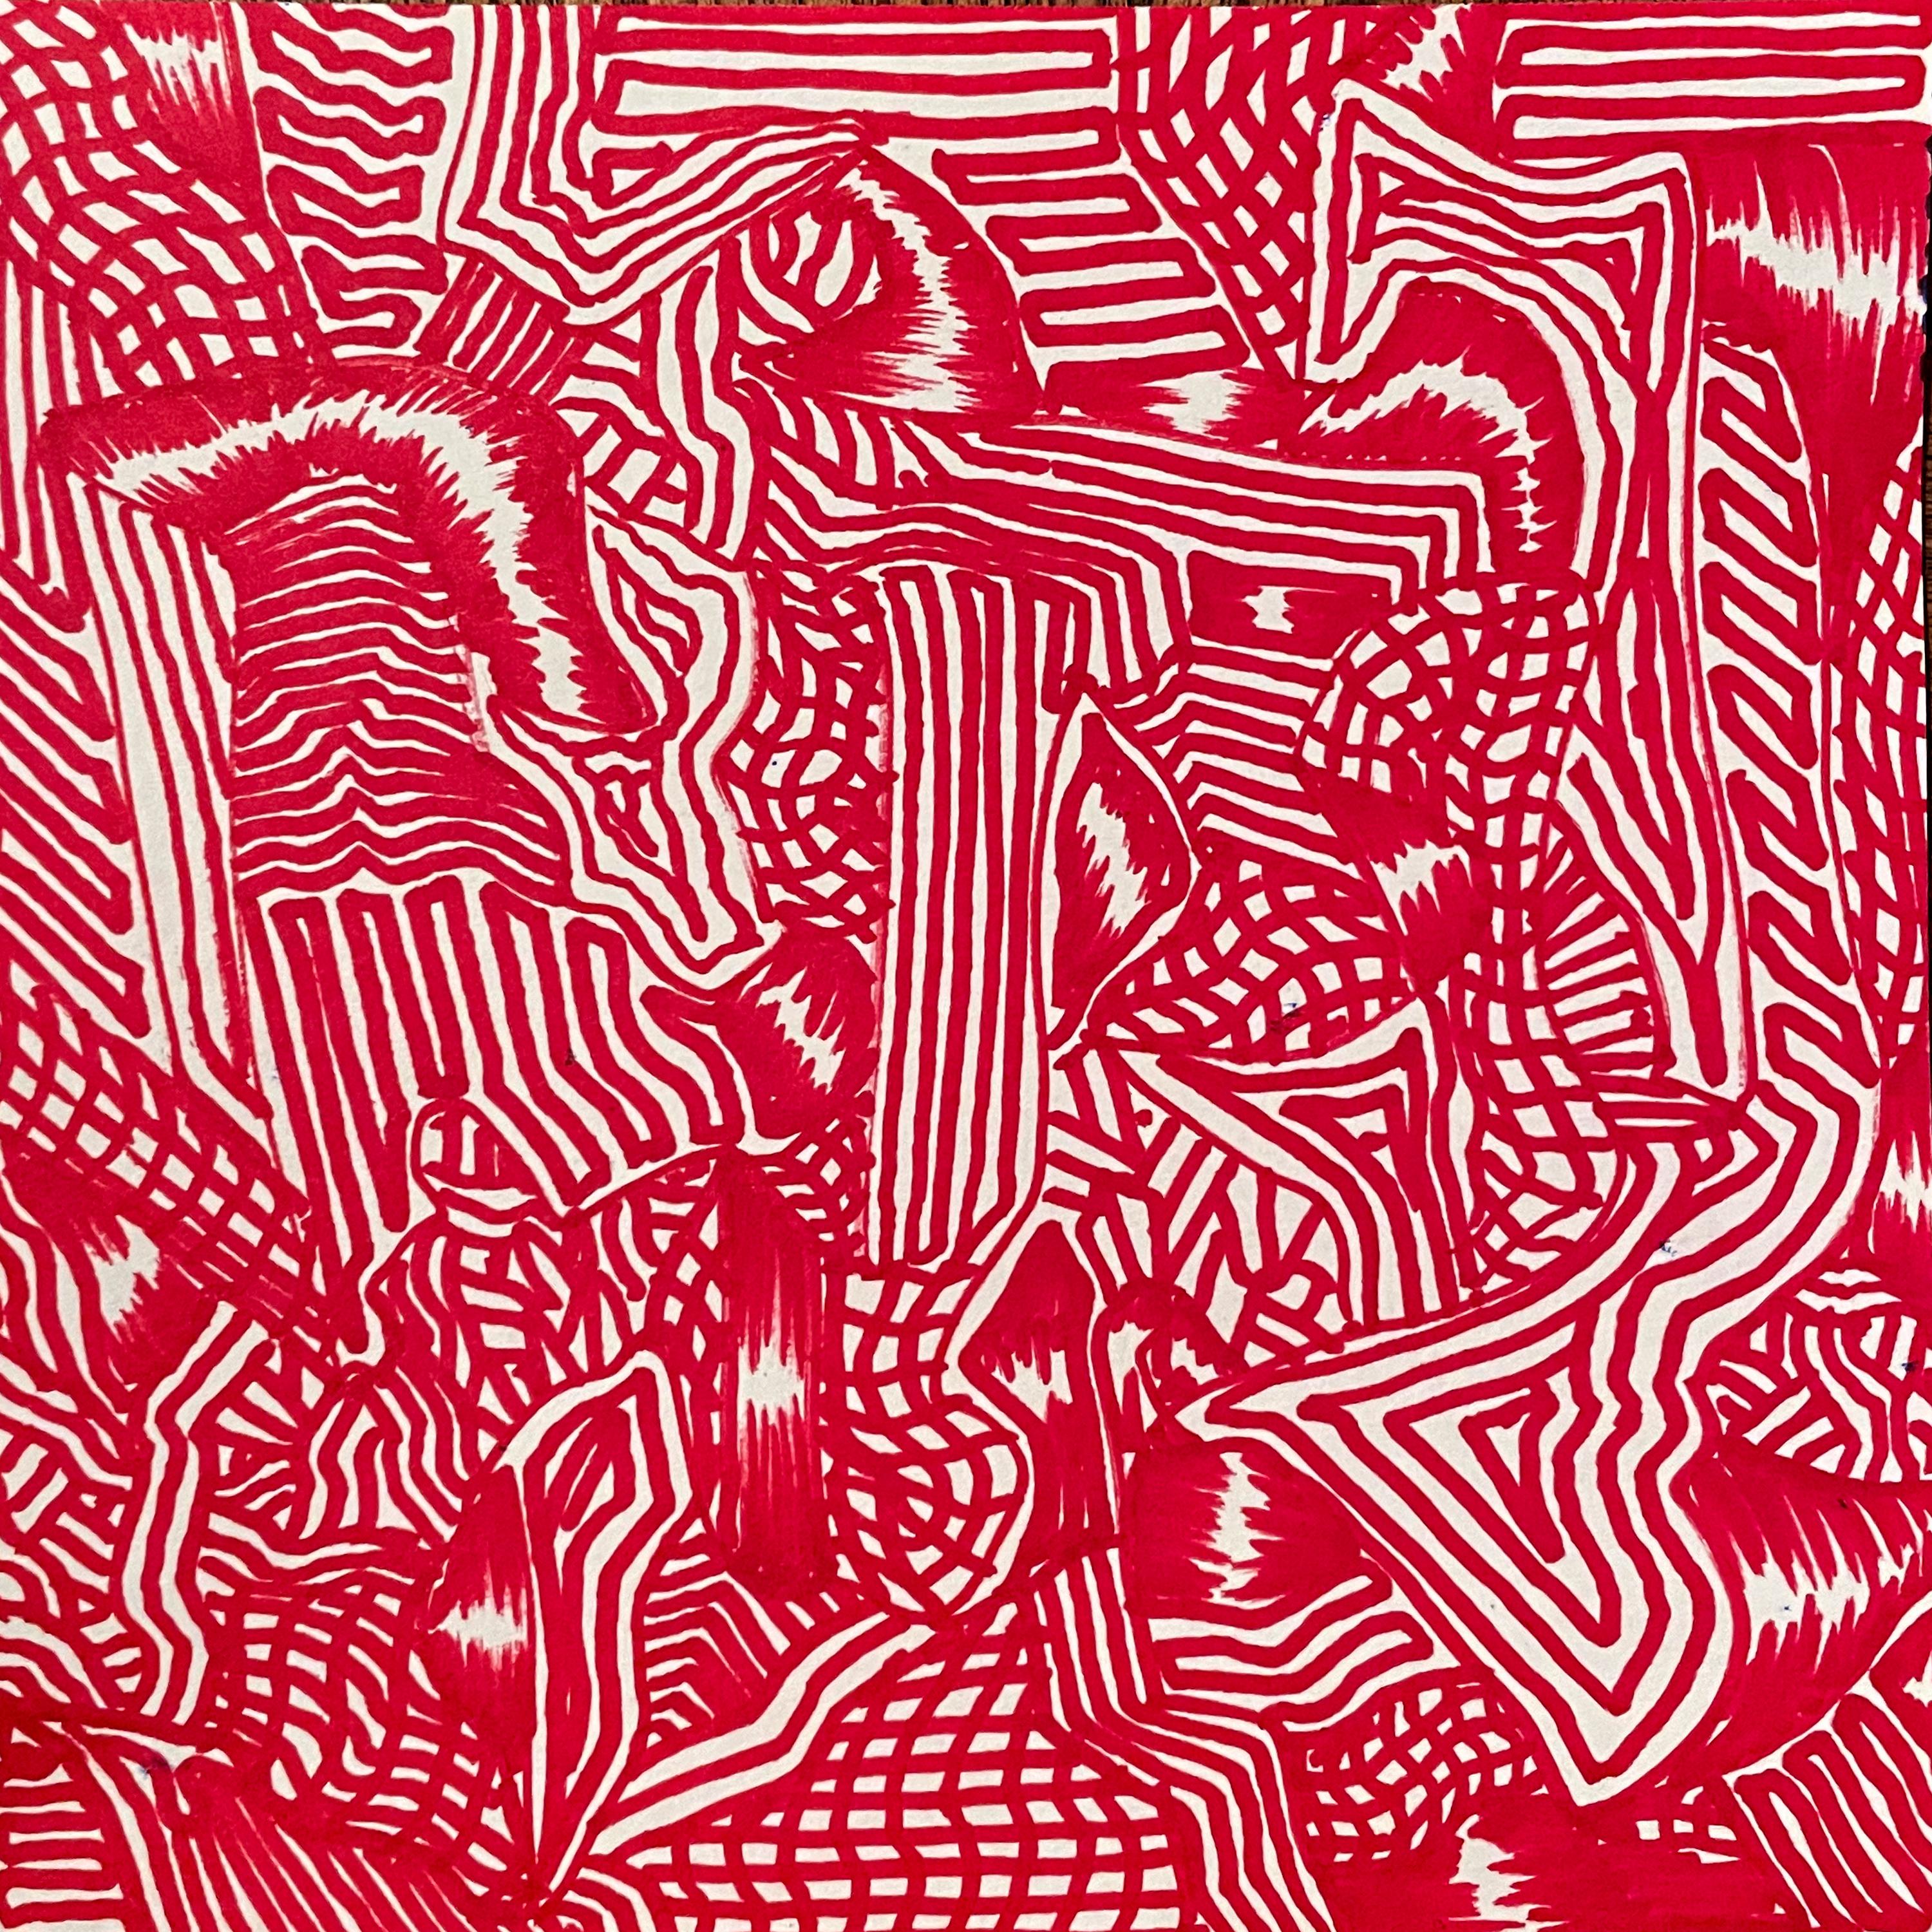 Tinte auf Papier

David Paul Kaye ist ein amerikanischer zeitgenössischer Künstler, der 1982 geboren wurde und in New York City, USA, lebt und arbeitet. Mit dem Schwerpunkt auf lebendigen Linien und komplizierten Kompositionen schafft Kaye fesselnde